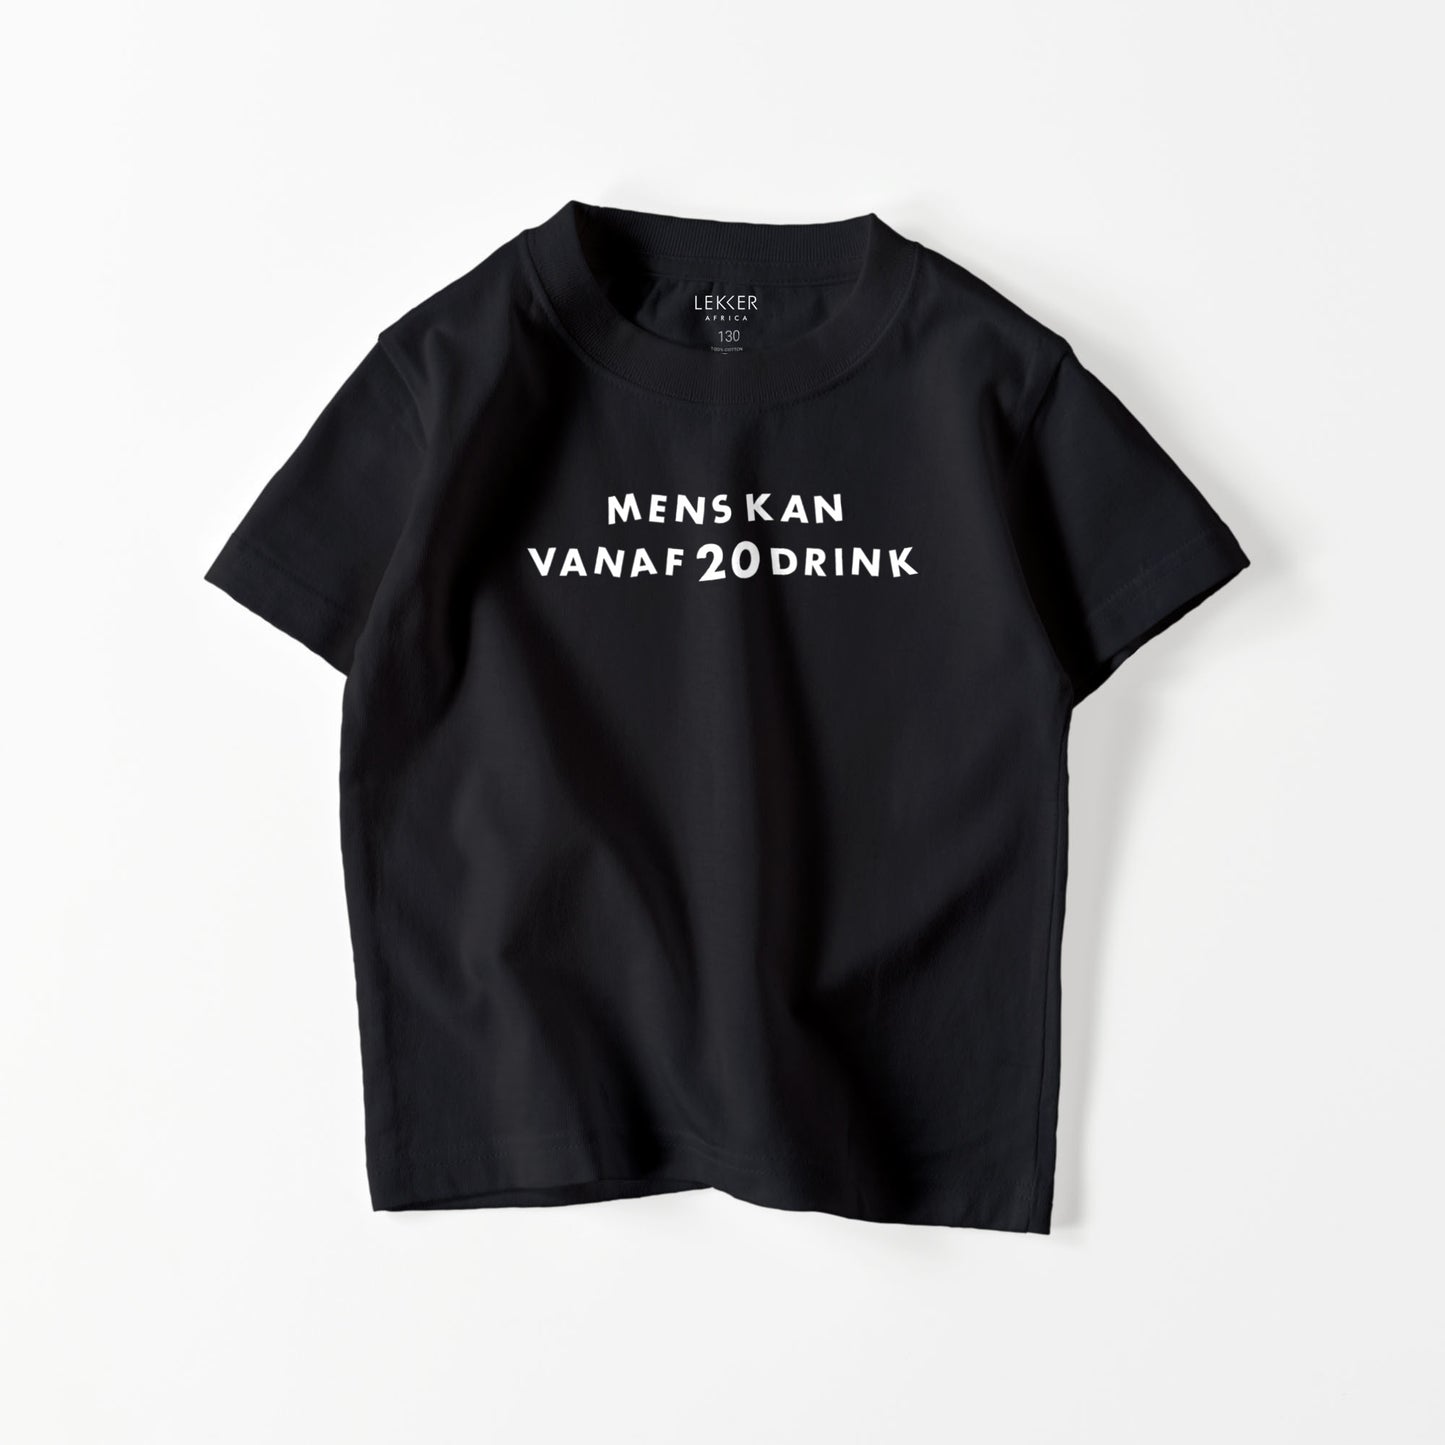 【キッズ】Mens kan vanaf 20 drink Tシャツ